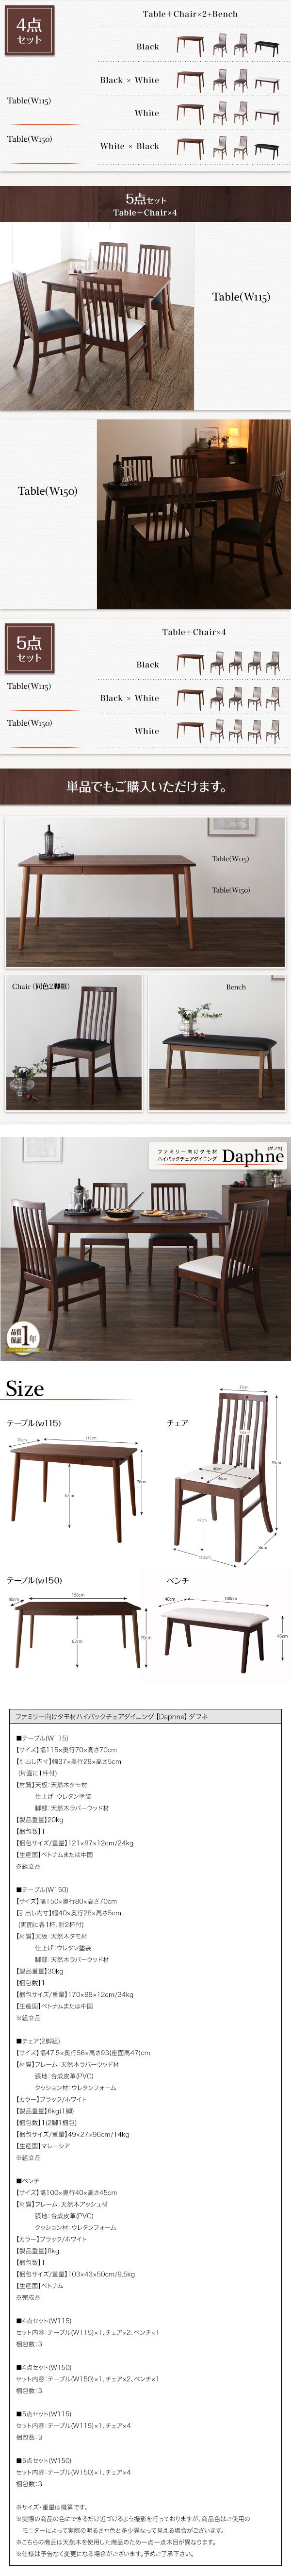 激安販売ダイニングテーブル W115 (単品) ファミリー向け ウォールナット材 Daphne ダフネ 4人用